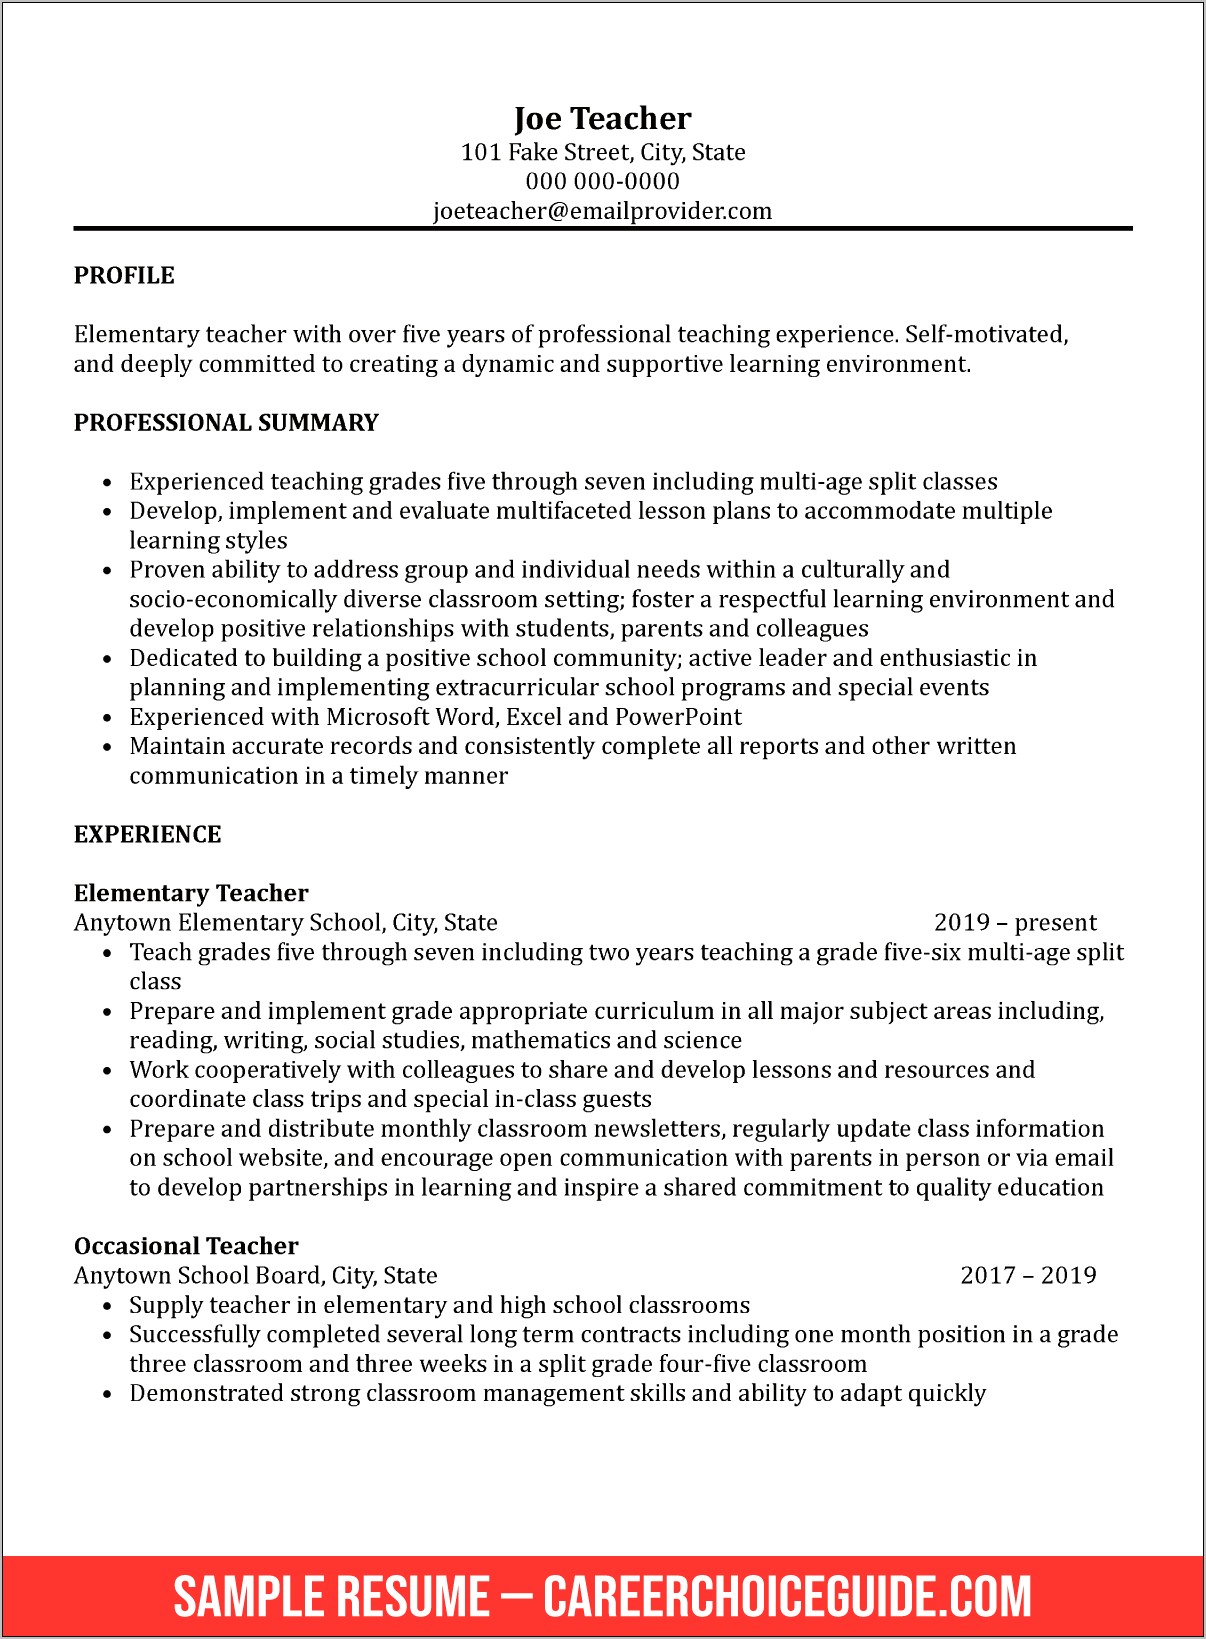 Skills Summary For Teachers Resume